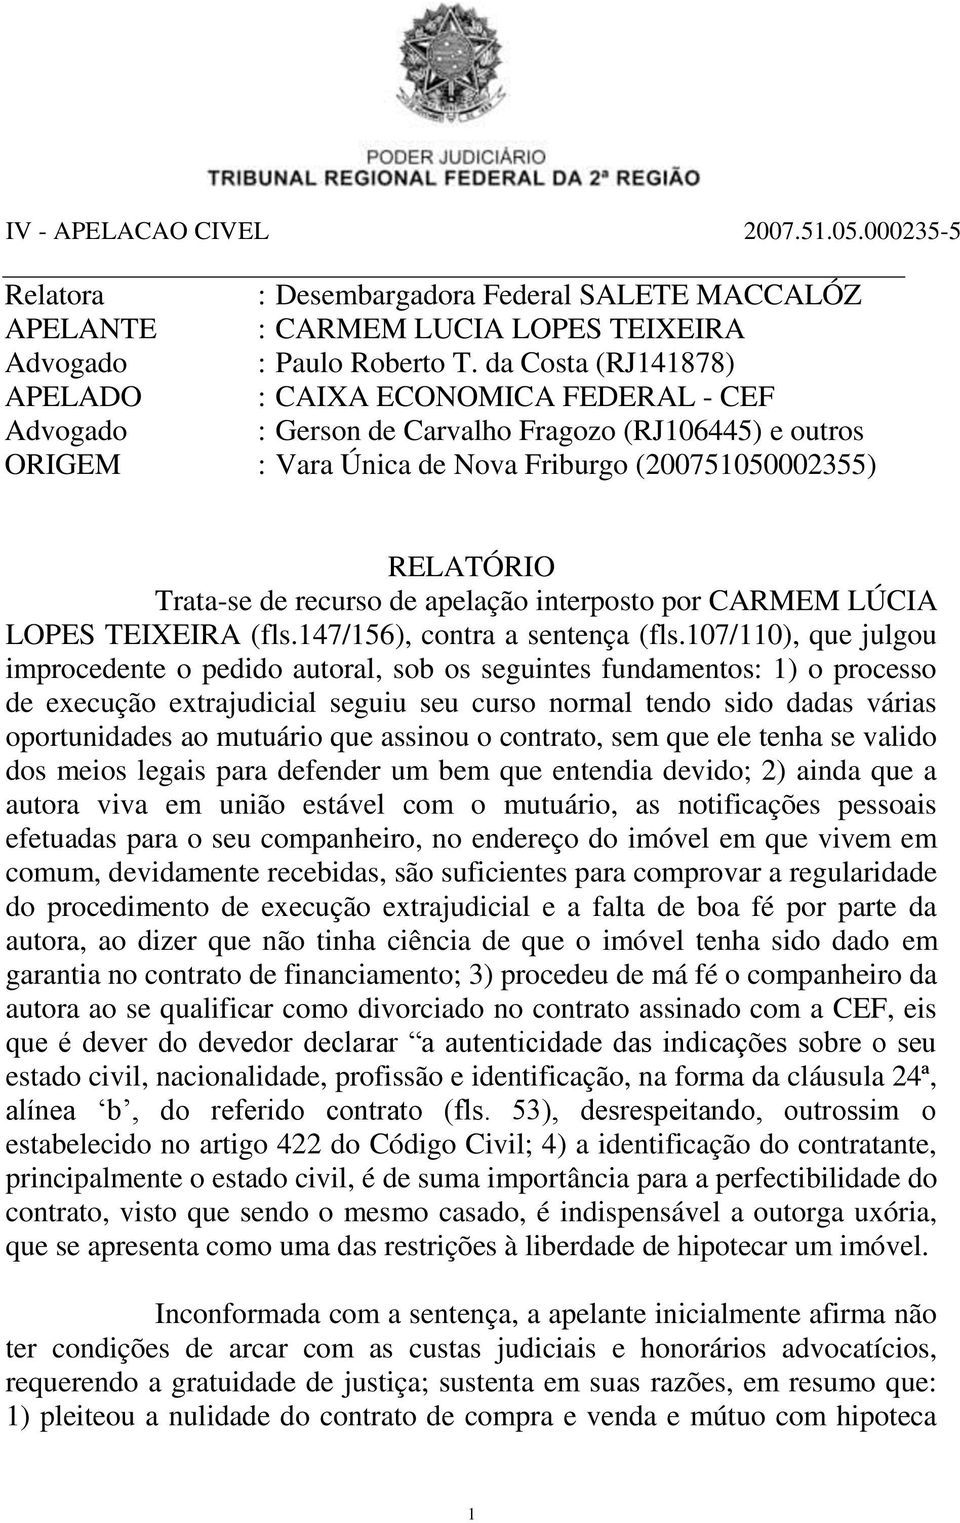 recurso de apelação interposto por CARMEM LÚCIA LOPES TEIXEIRA (fls.147/156), contra a sentença (fls.